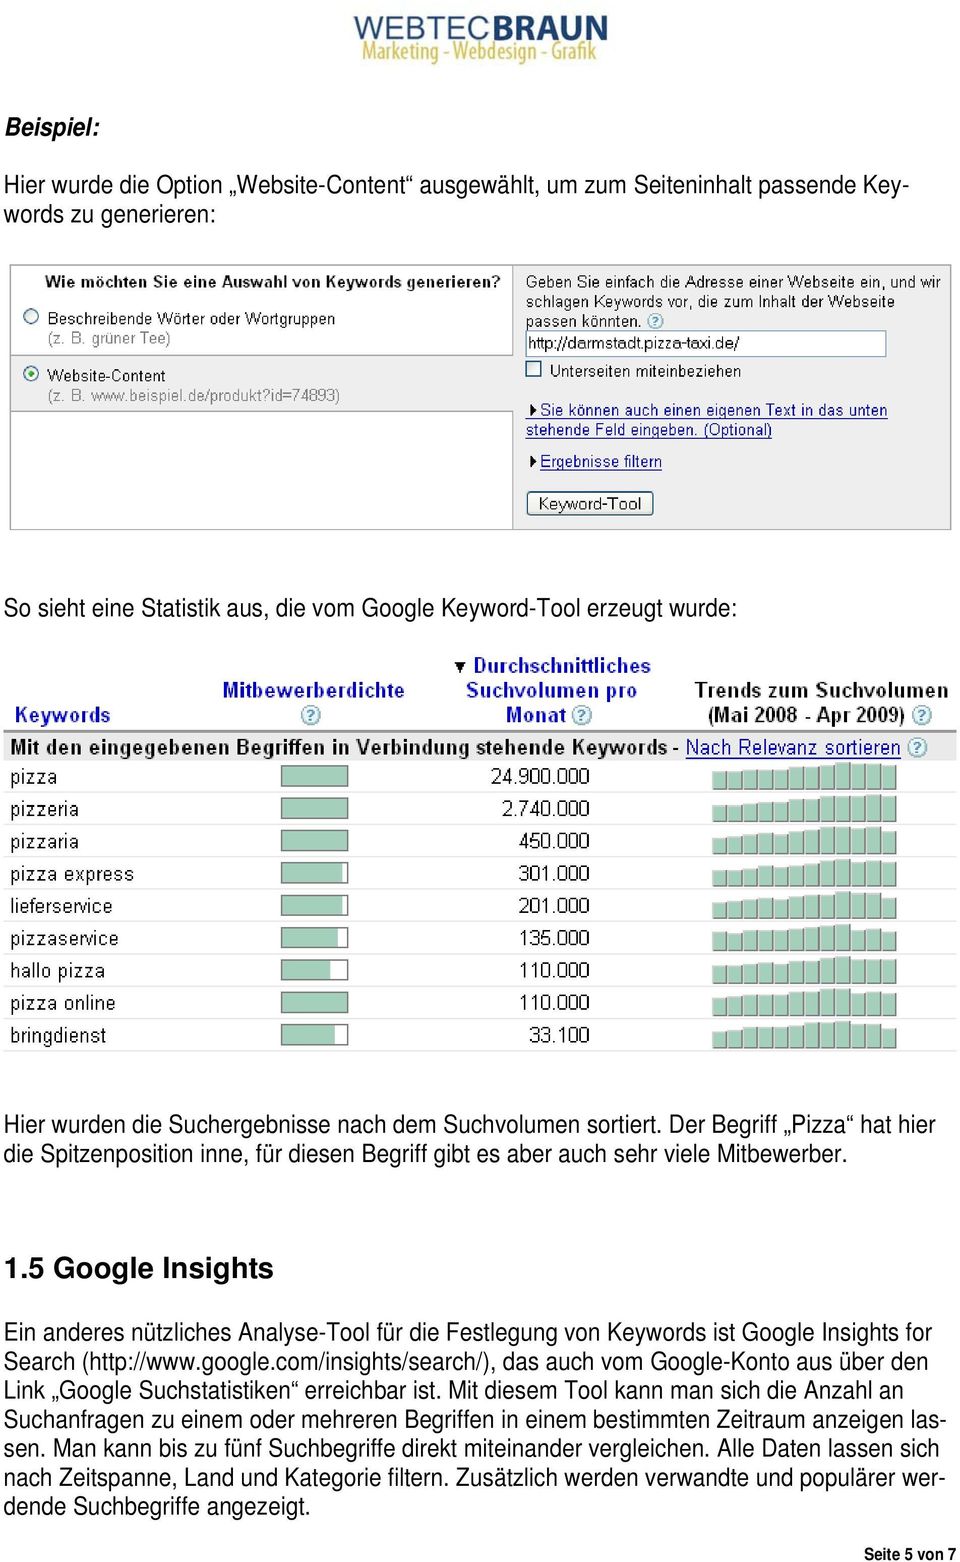 5 Google Insights Ein anderes nützliches Analyse-Tool für die Festlegung von Keywords ist Google Insights for Search (http://www.google.